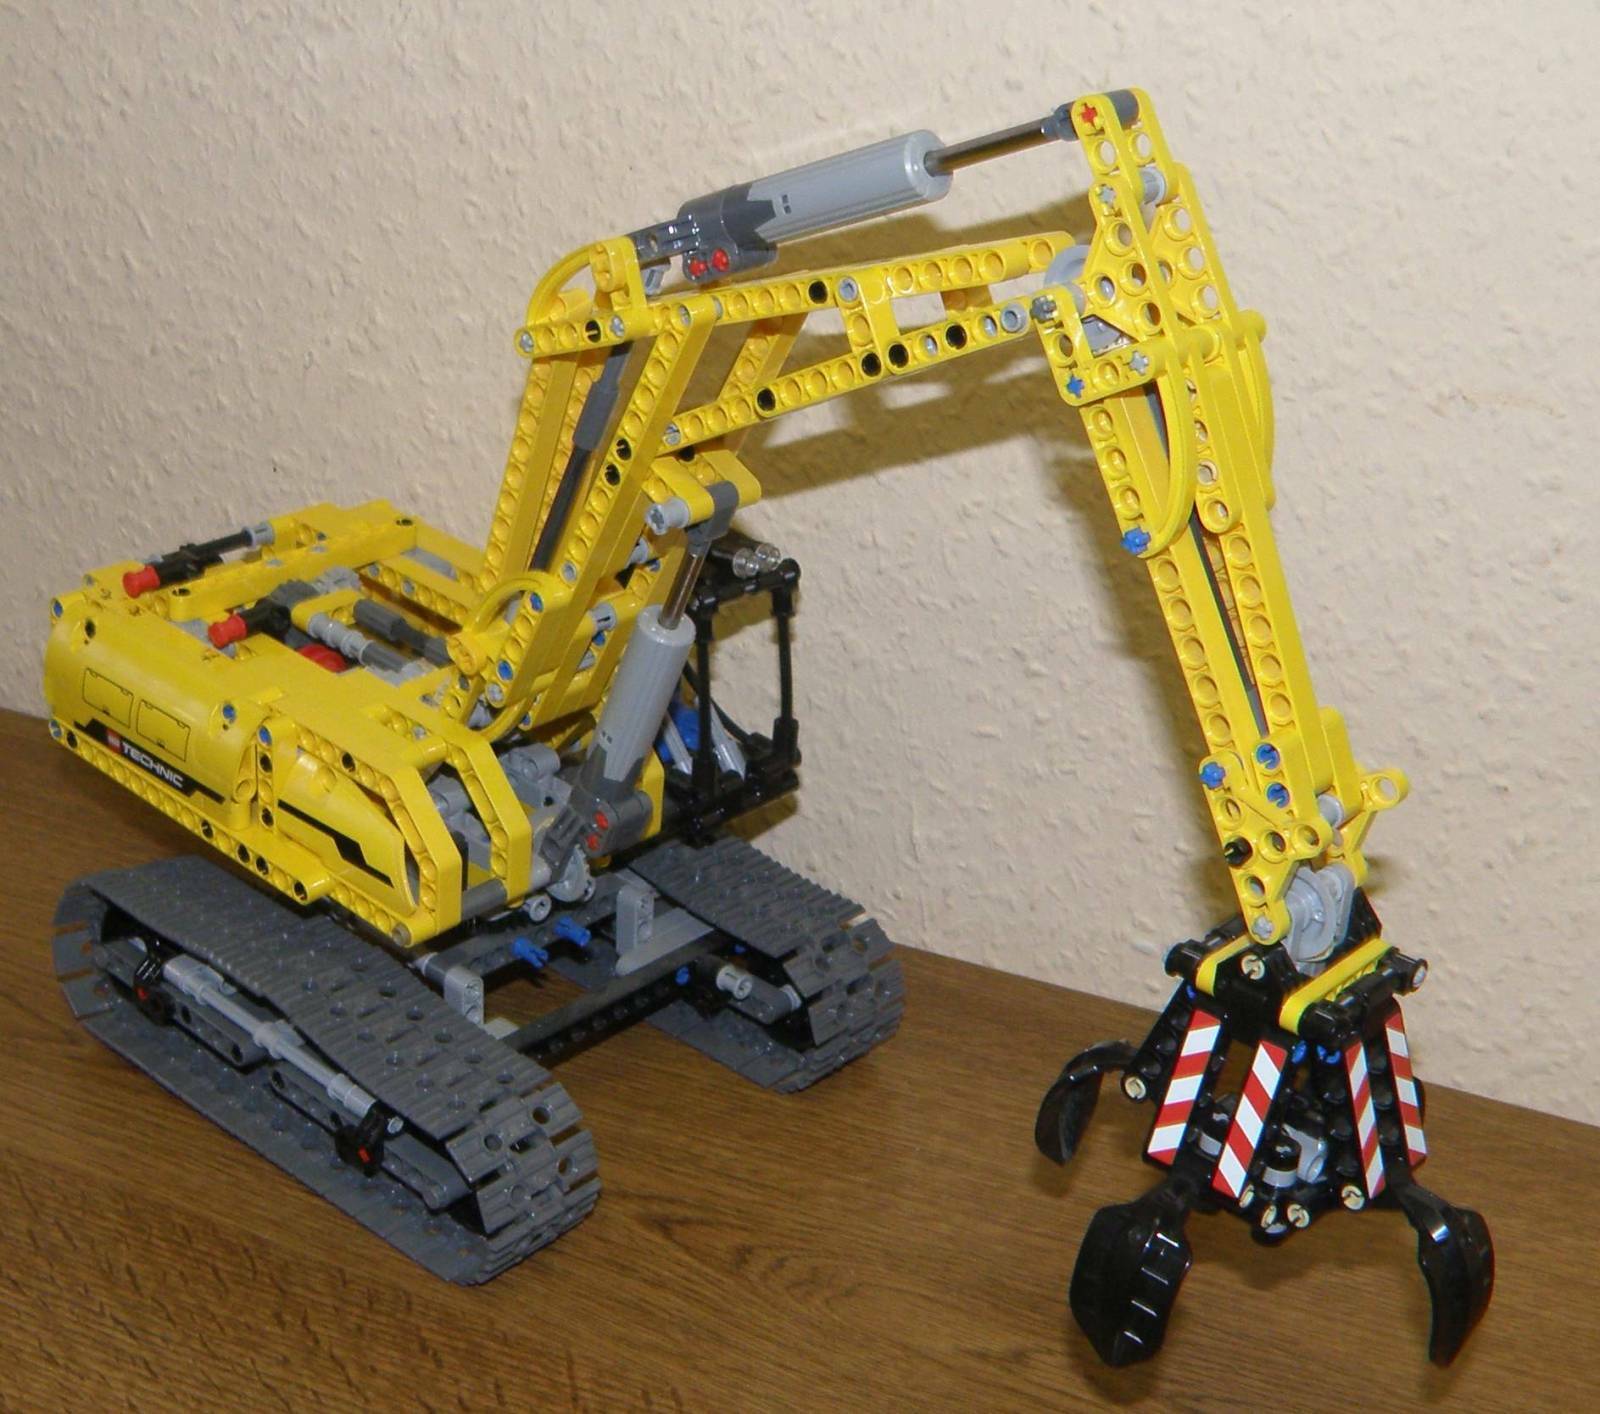 Lego Technic 42006 Koparka Gąsienicowa Koparka Gąsienicowa Koparka gąsienicowa 100% w komplecie z instrukcjami-pokaż oryginalną nazwę Bezpłatne ogólnokrajowe, wybuchowe zakupy